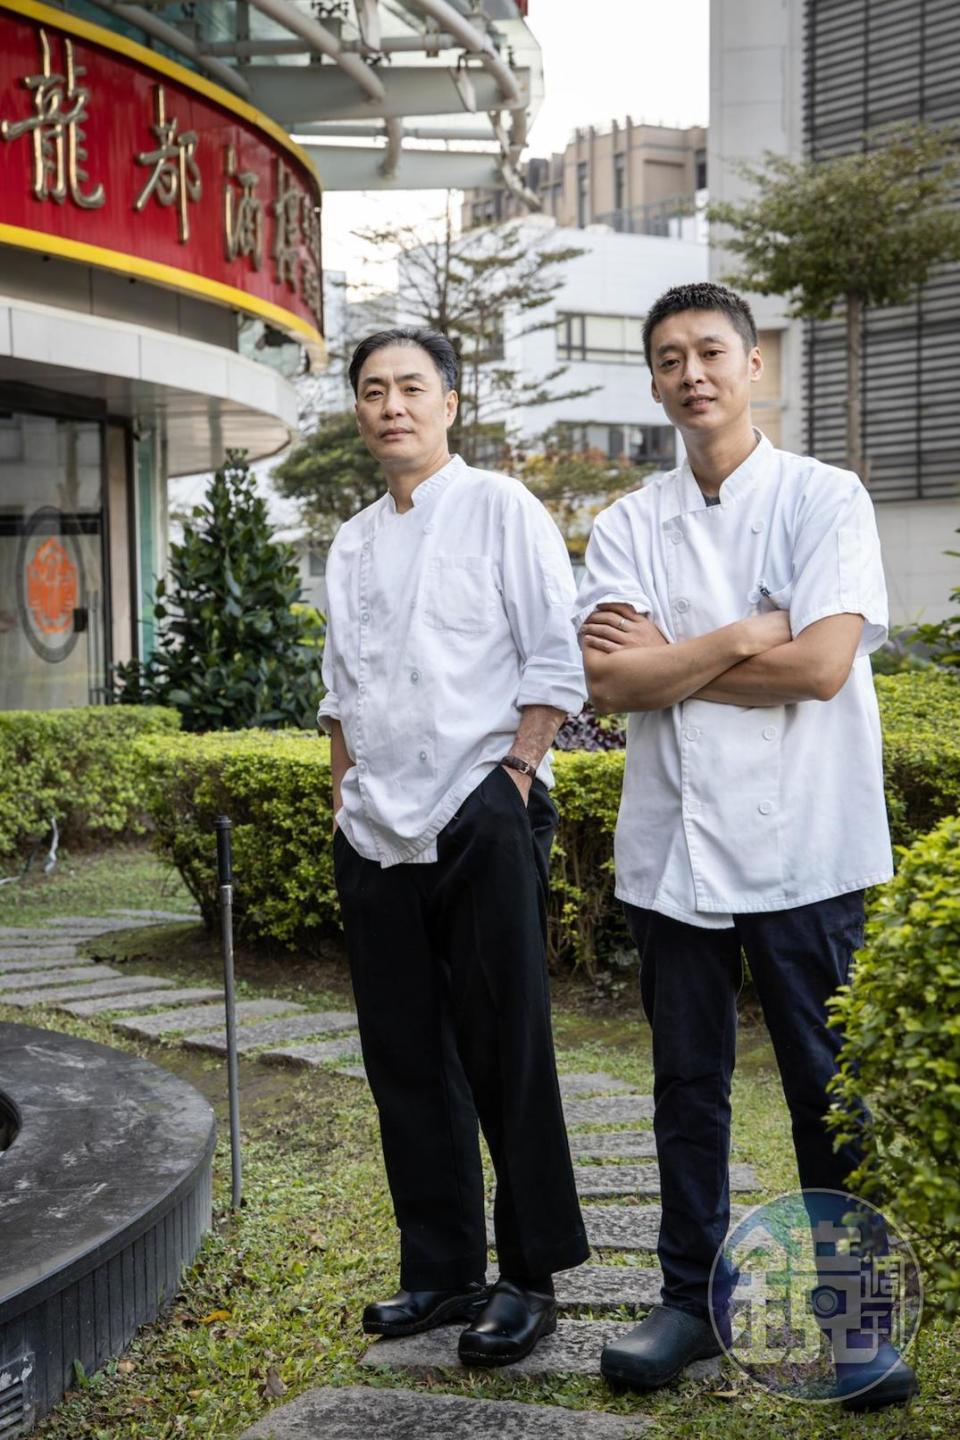 「龍都酒樓」行政主廚陳光正（左）與點心主廚胡初亮（右）順應台灣人的口味，不斷嘗試與創新菜色。